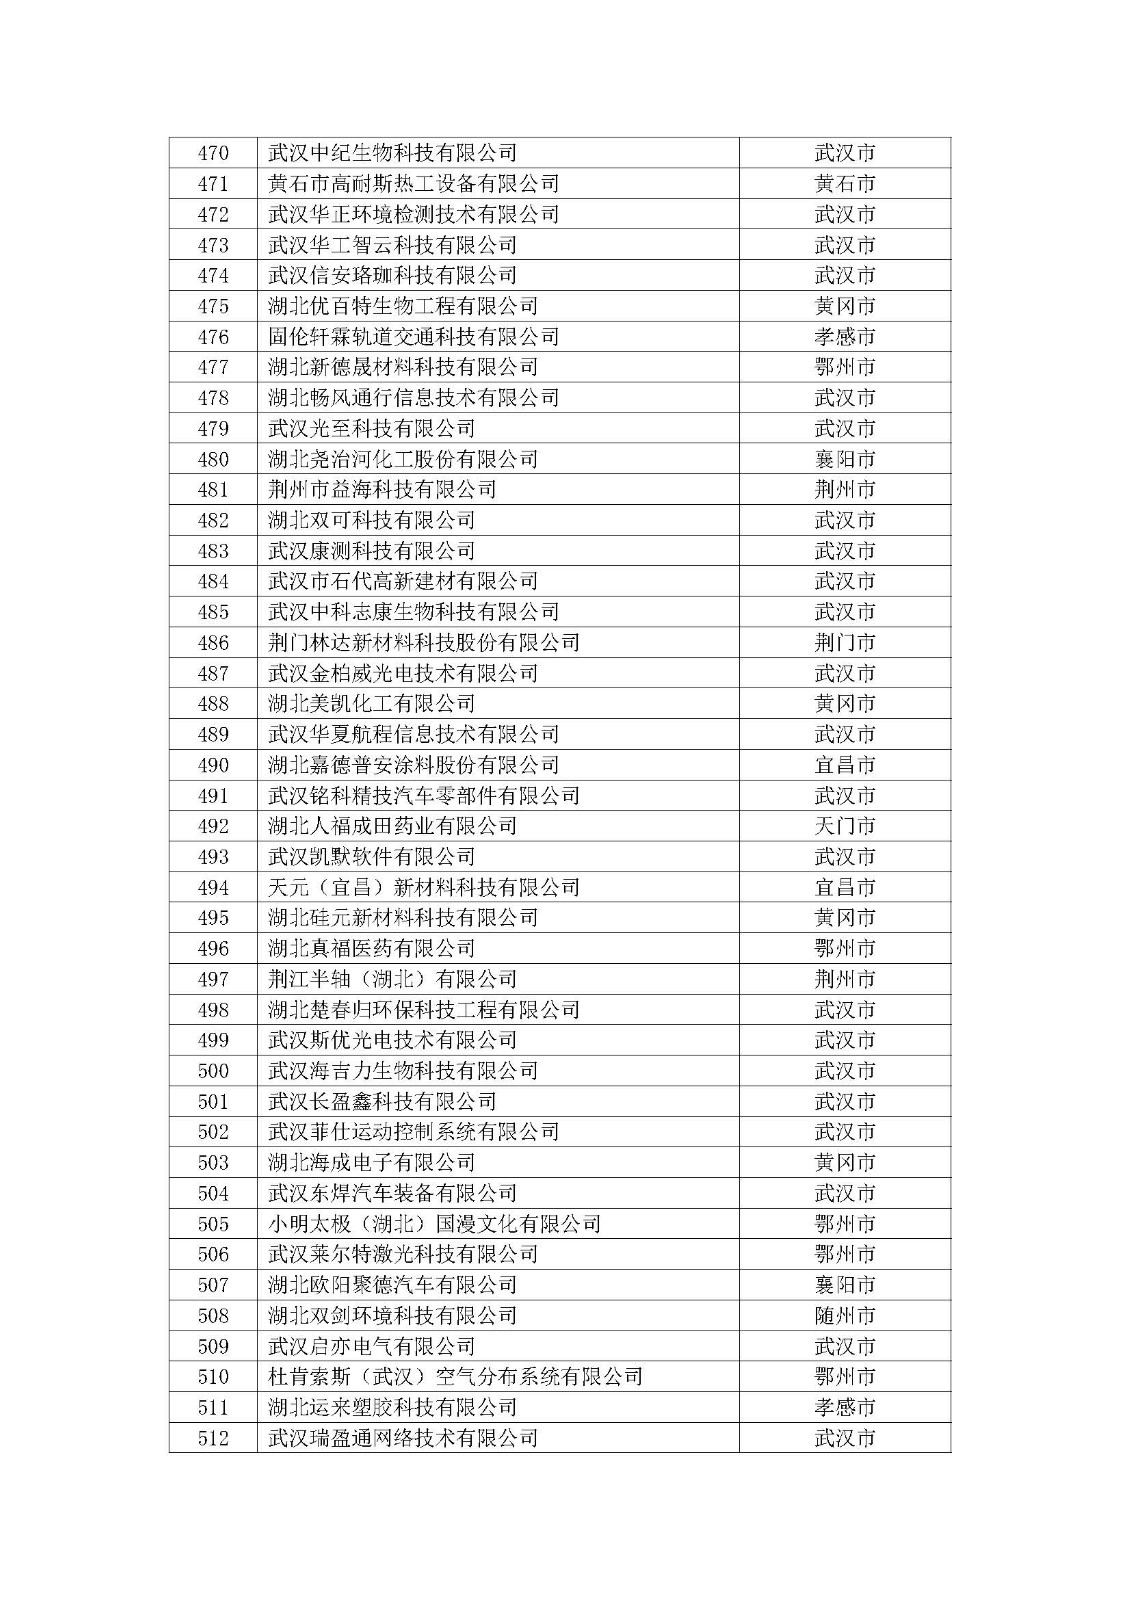 第一批拟入库湖北省科创“新物种”企业名单_页面_13.jpg